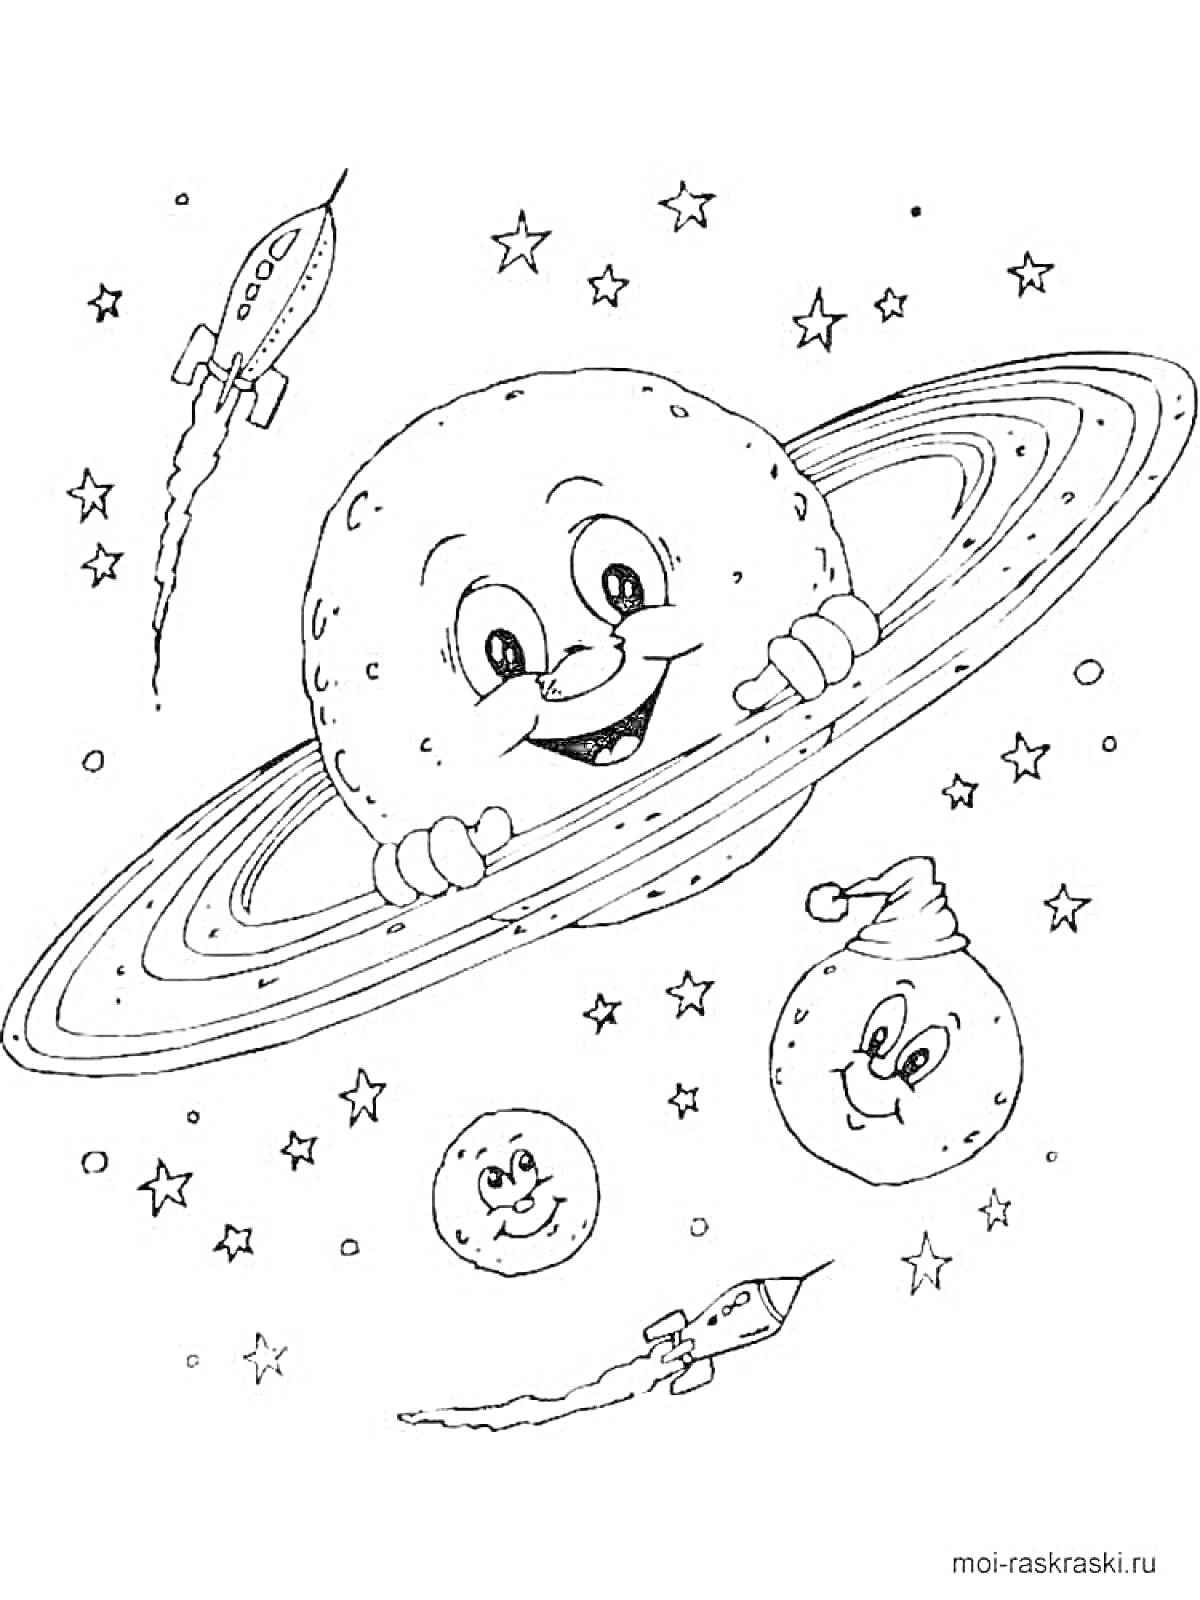 Раскраска Планета с кольцами и космические объекты (персонаж-планета с кольцами, персонаж-планета с шапкой, персонаж-планета с лицом, звезды, ракеты)